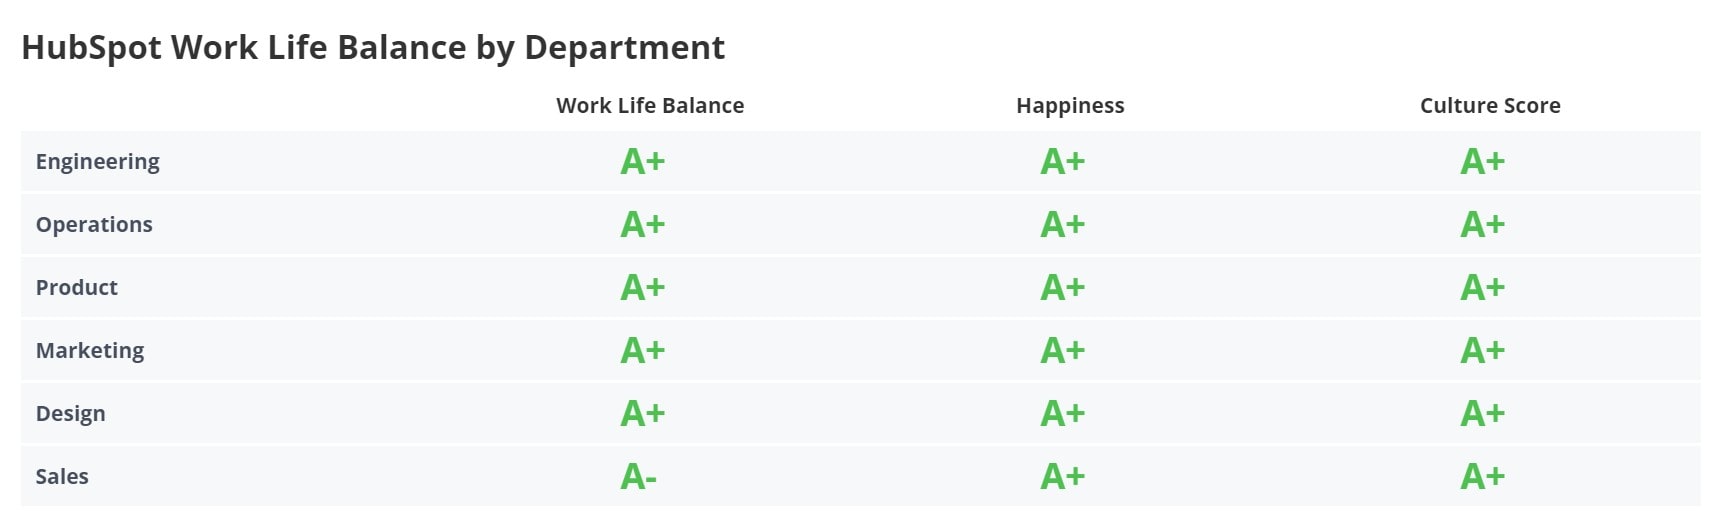 HubSpot Work-Life Balance by Department